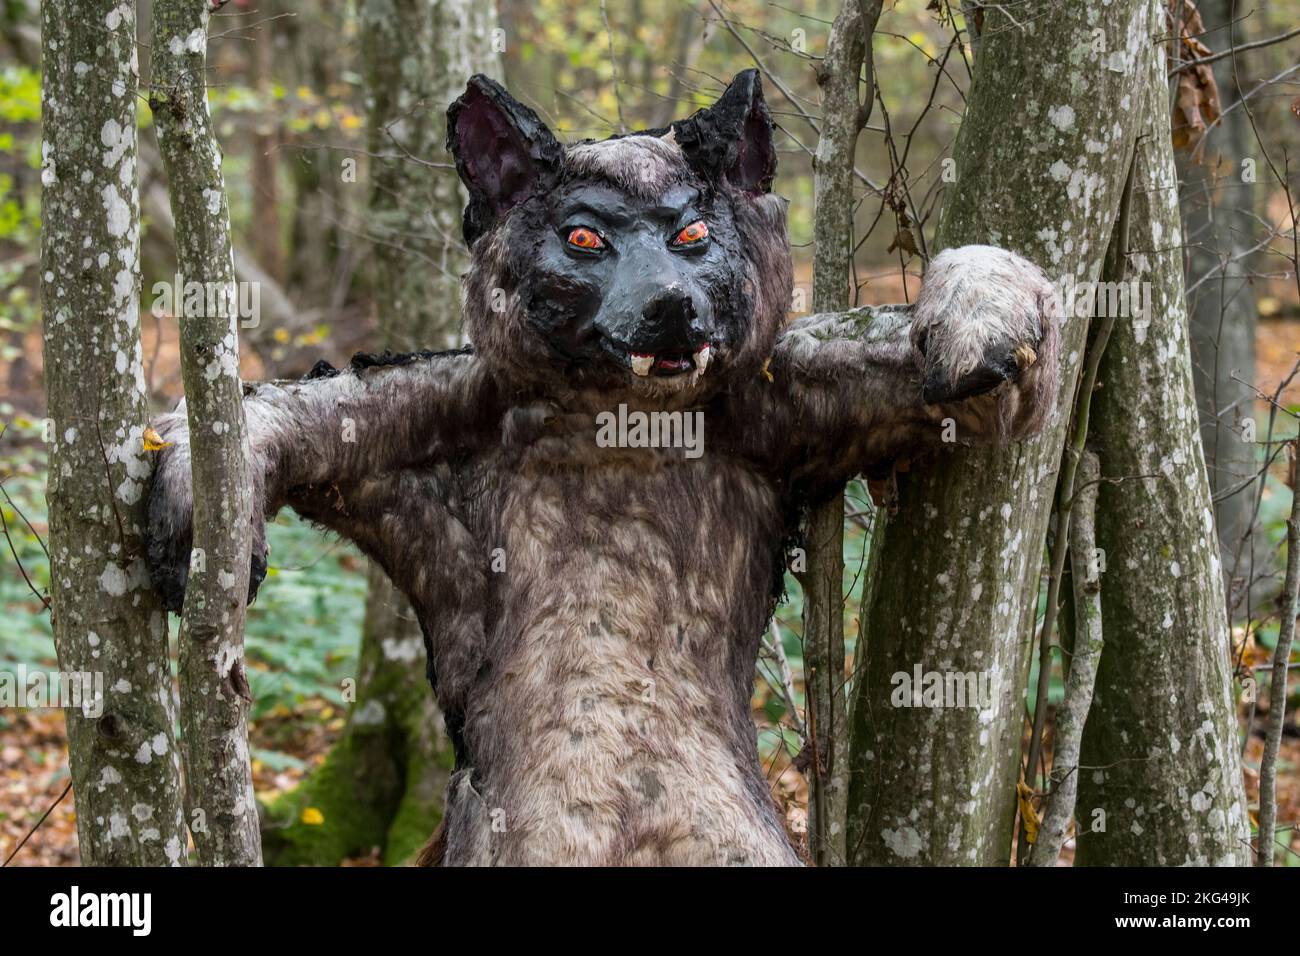 Pauroso puppet di lupo mannaro in foresta / bosco, umano con la capacità di shapeshift in un lupo nel folclore europeo Foto Stock